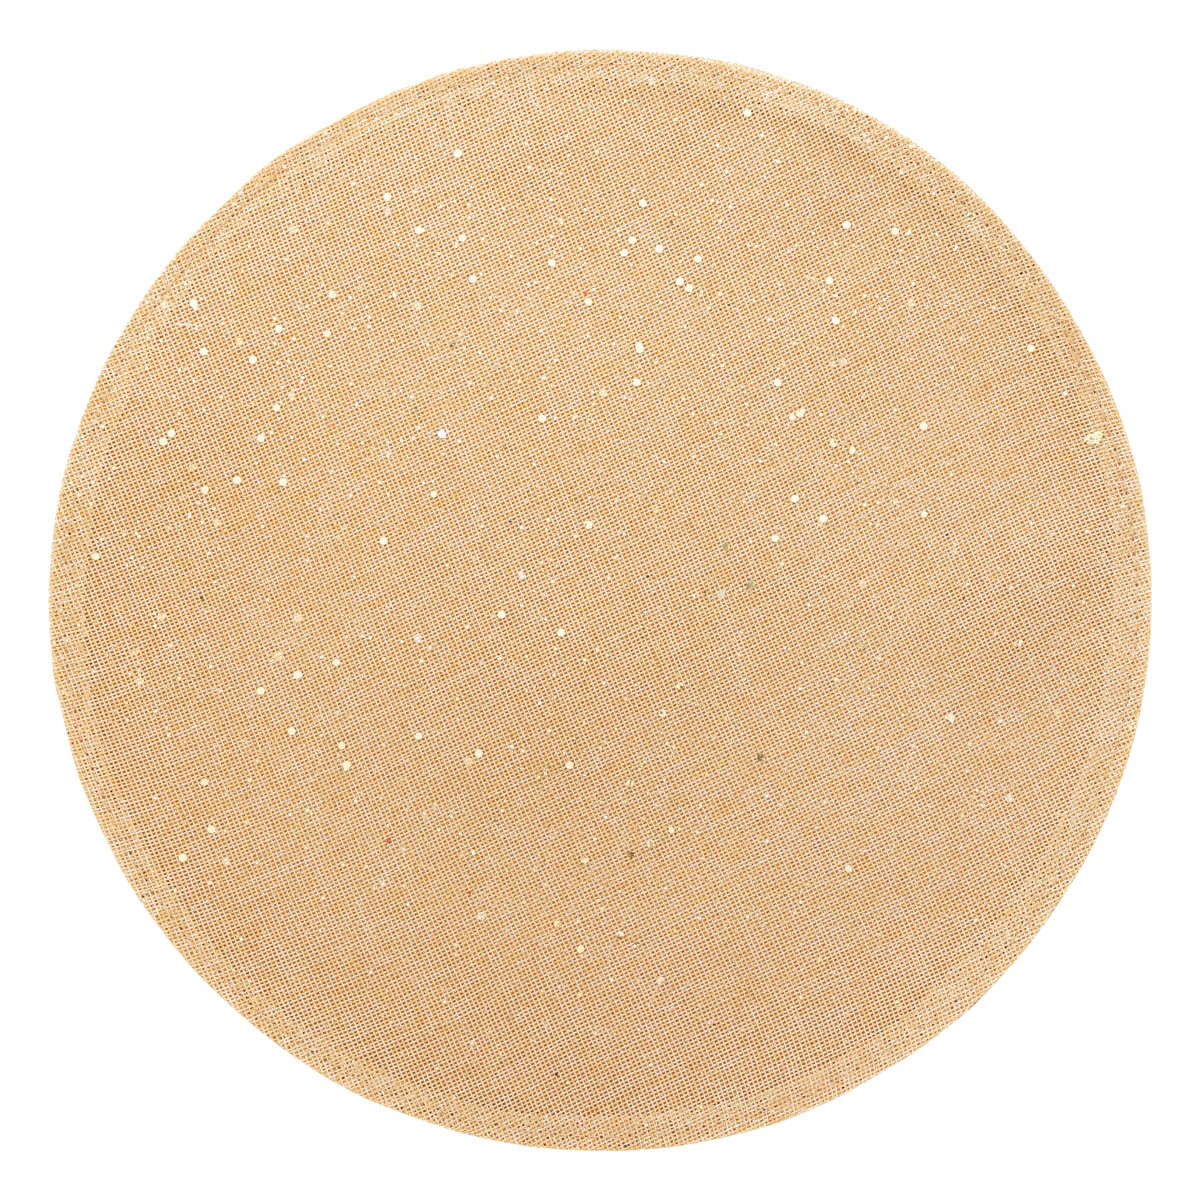 Σουπλά (Φ38) A-S Glitter Gold 191118OR 266434